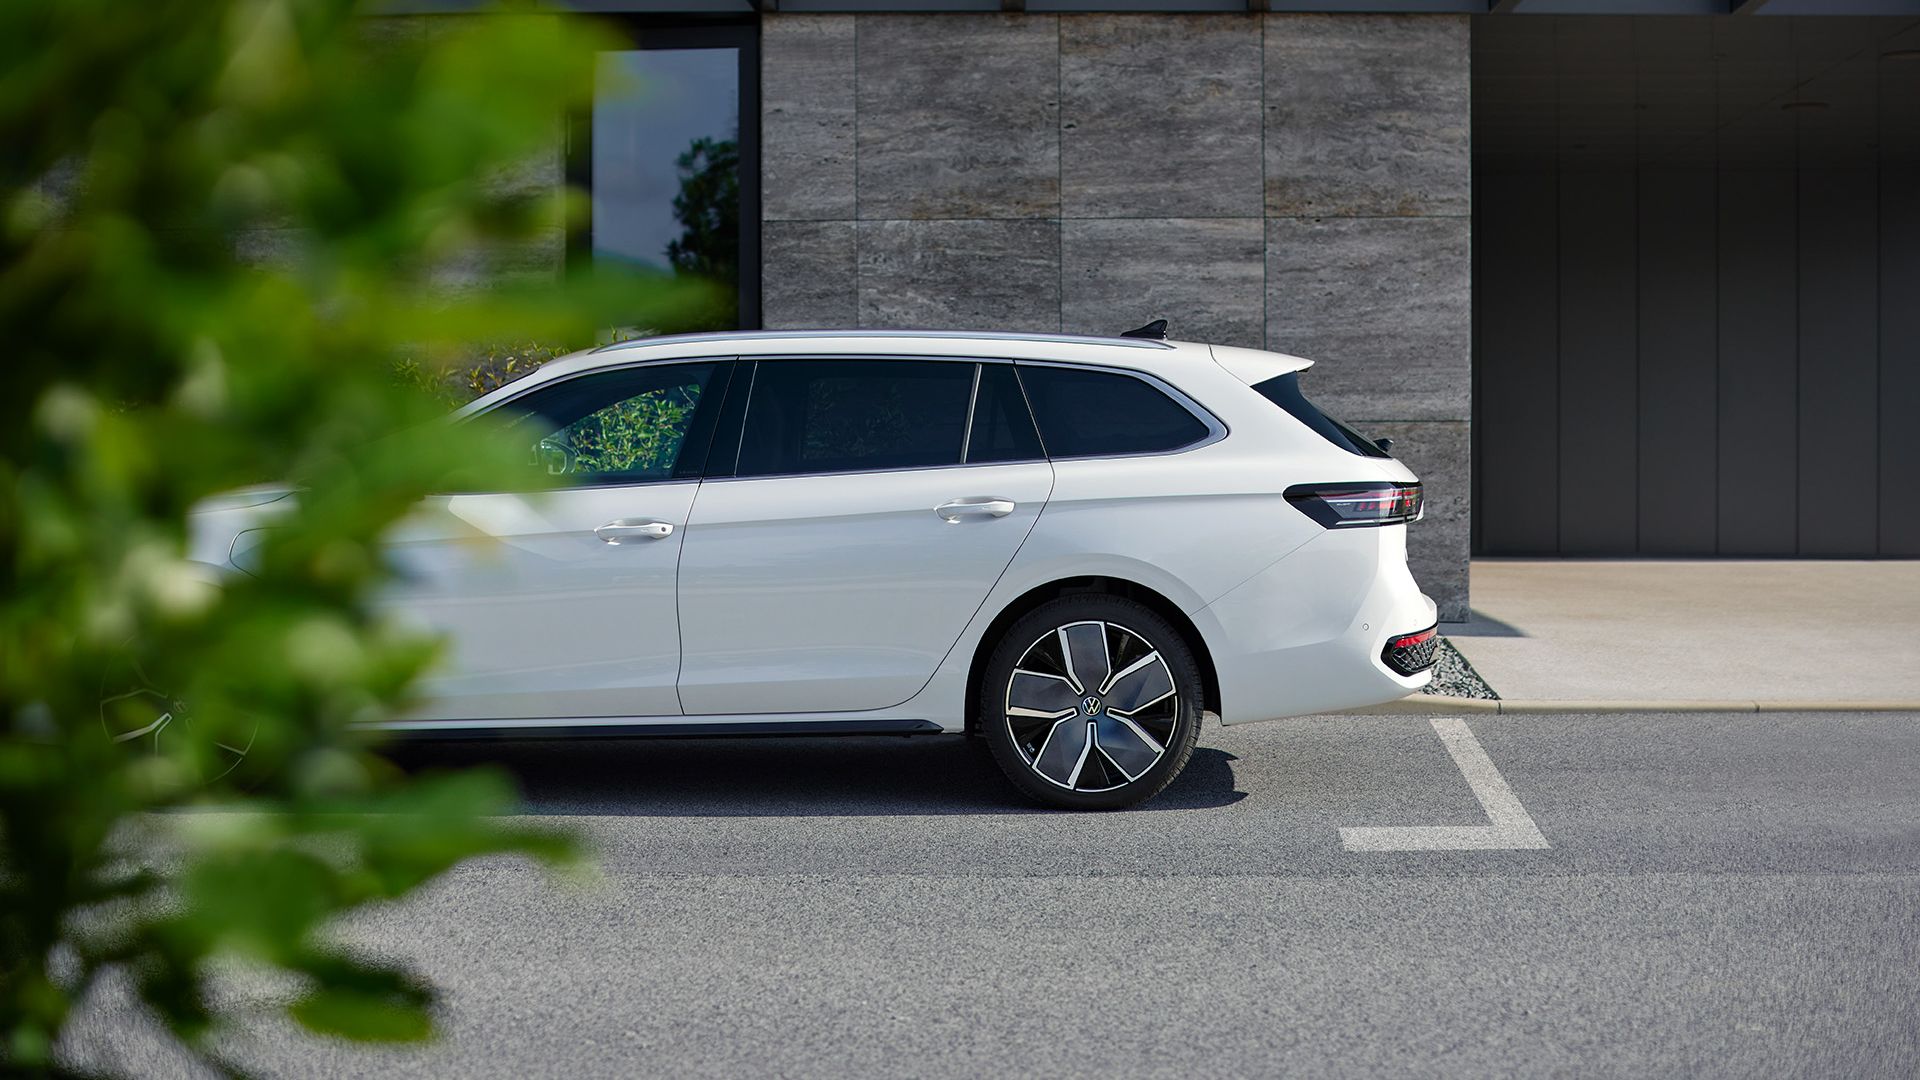 Ein weißer VW Passat steht geparkt vor einem Haus, die Front ist leicht durch einen Busch im Vordergrund verdeckt